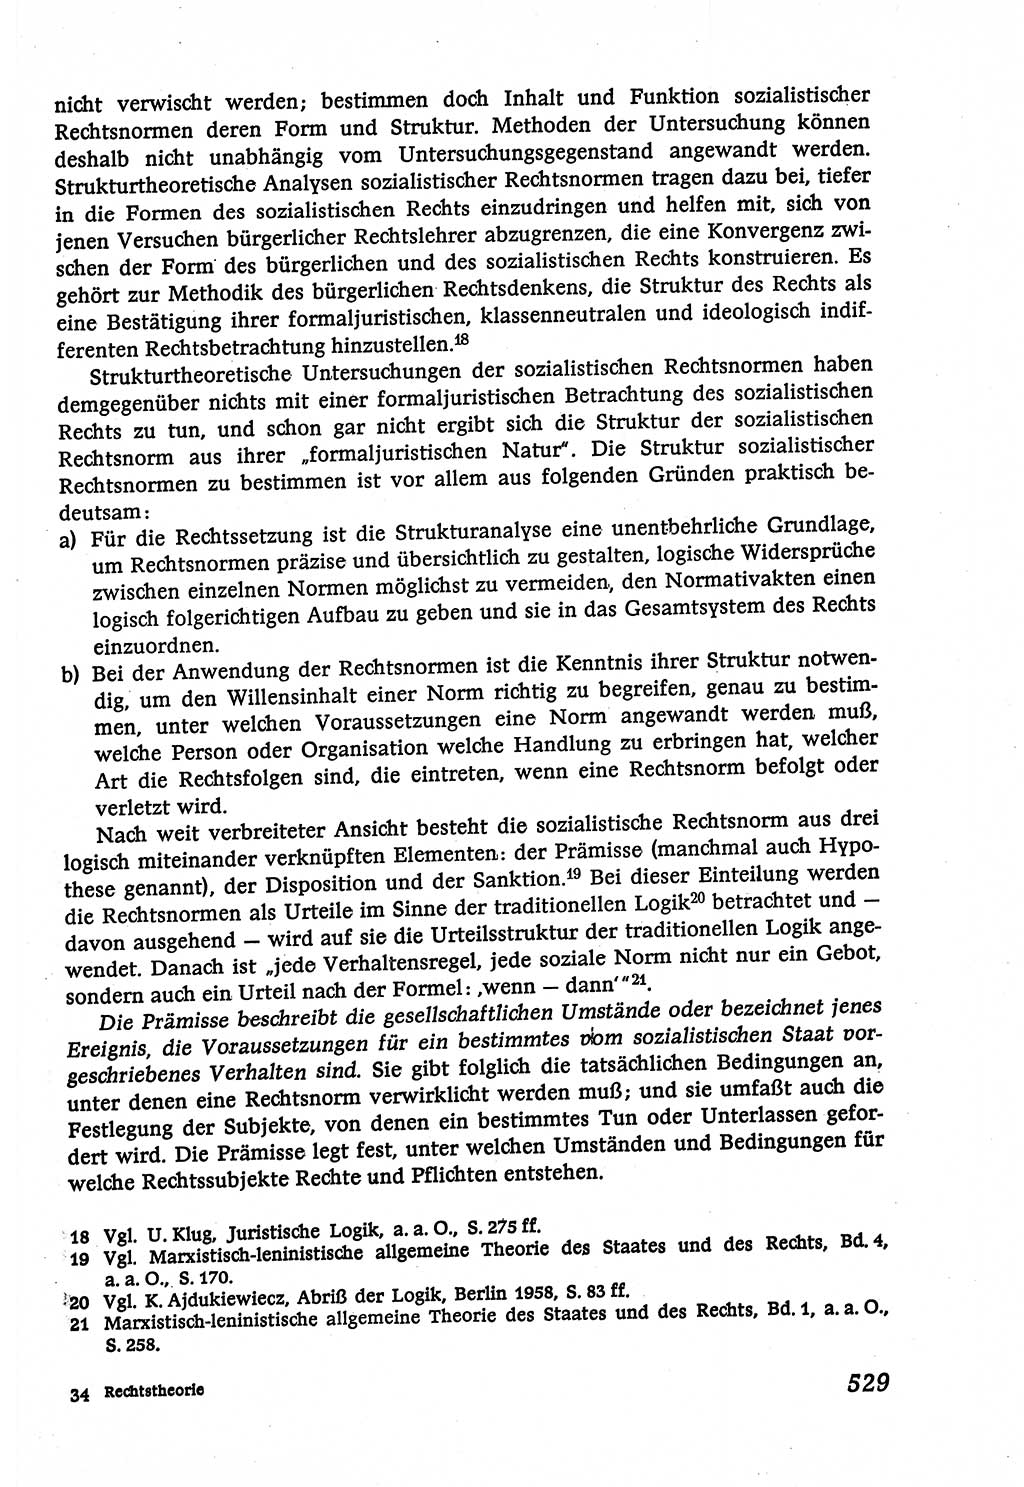 Marxistisch-leninistische (ML) Staats- und Rechtstheorie [Deutsche Demokratische Republik (DDR)], Lehrbuch 1980, Seite 529 (ML St.-R.-Th. DDR Lb. 1980, S. 529)